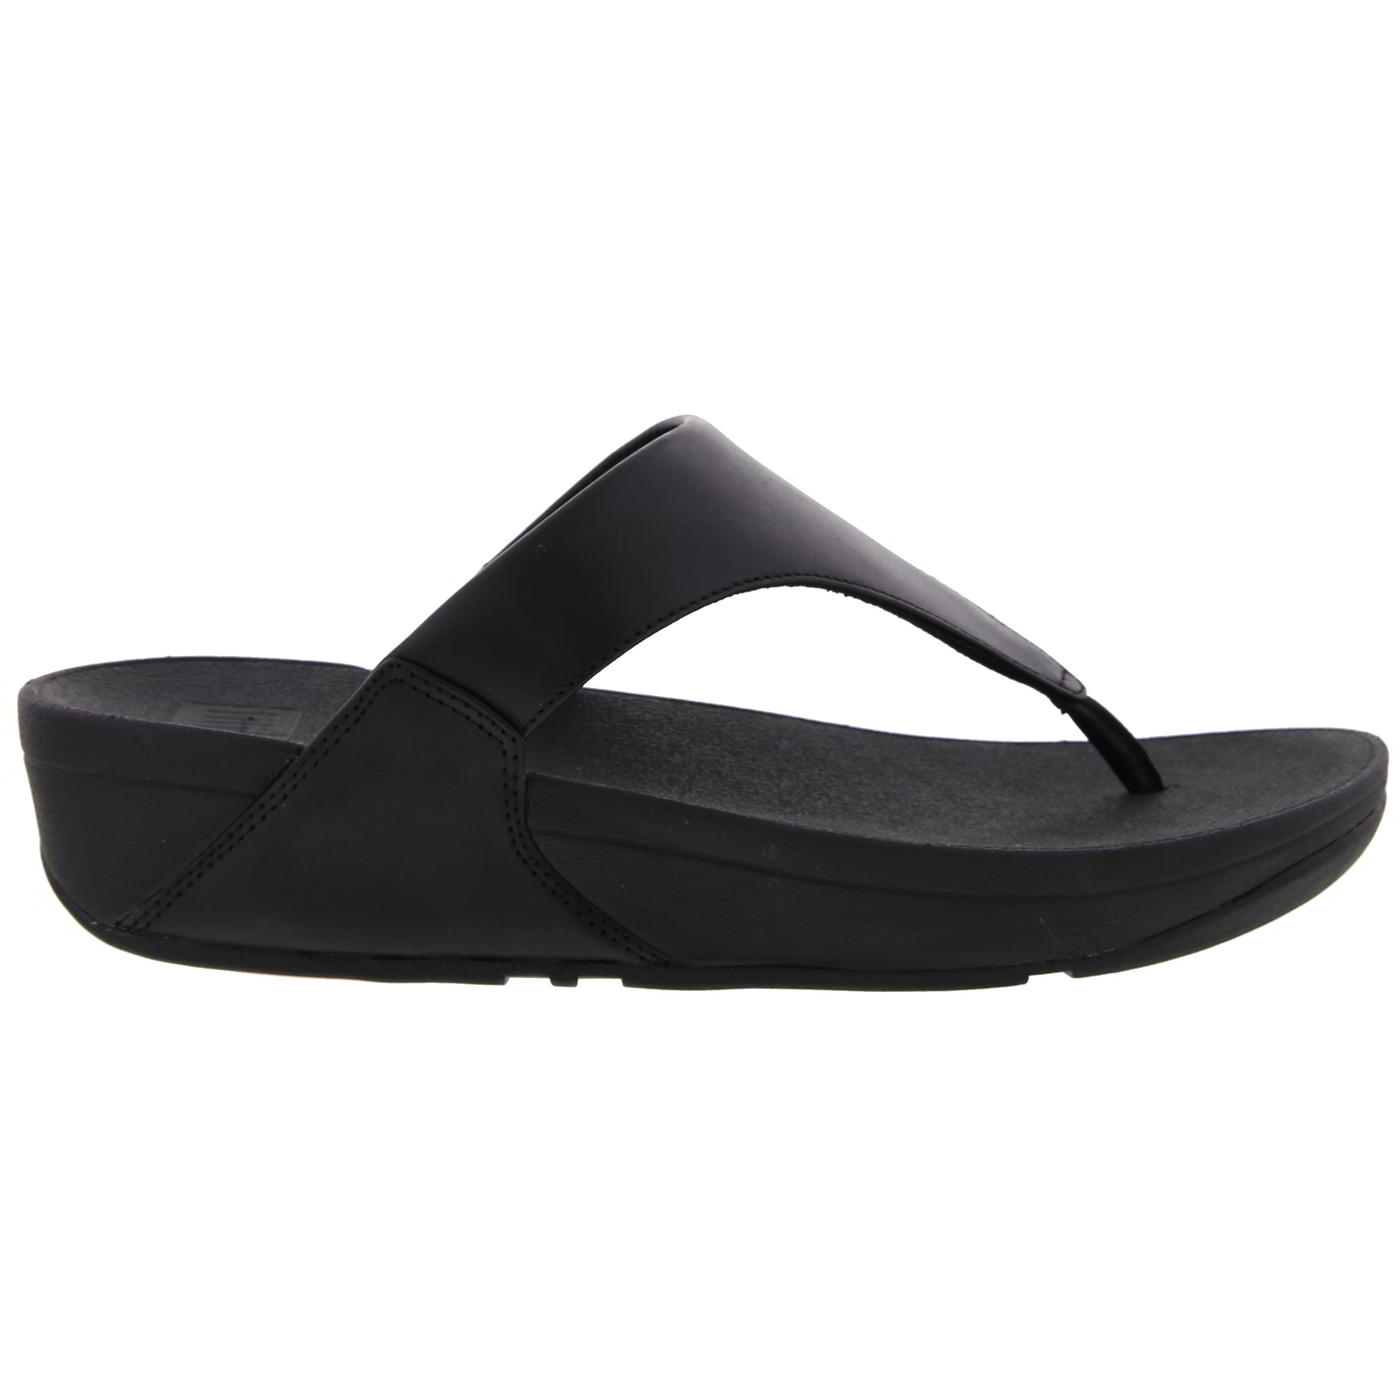 FitFlop Women's Lulu Toe Post Leather Flip Flop Sandals - UK 6